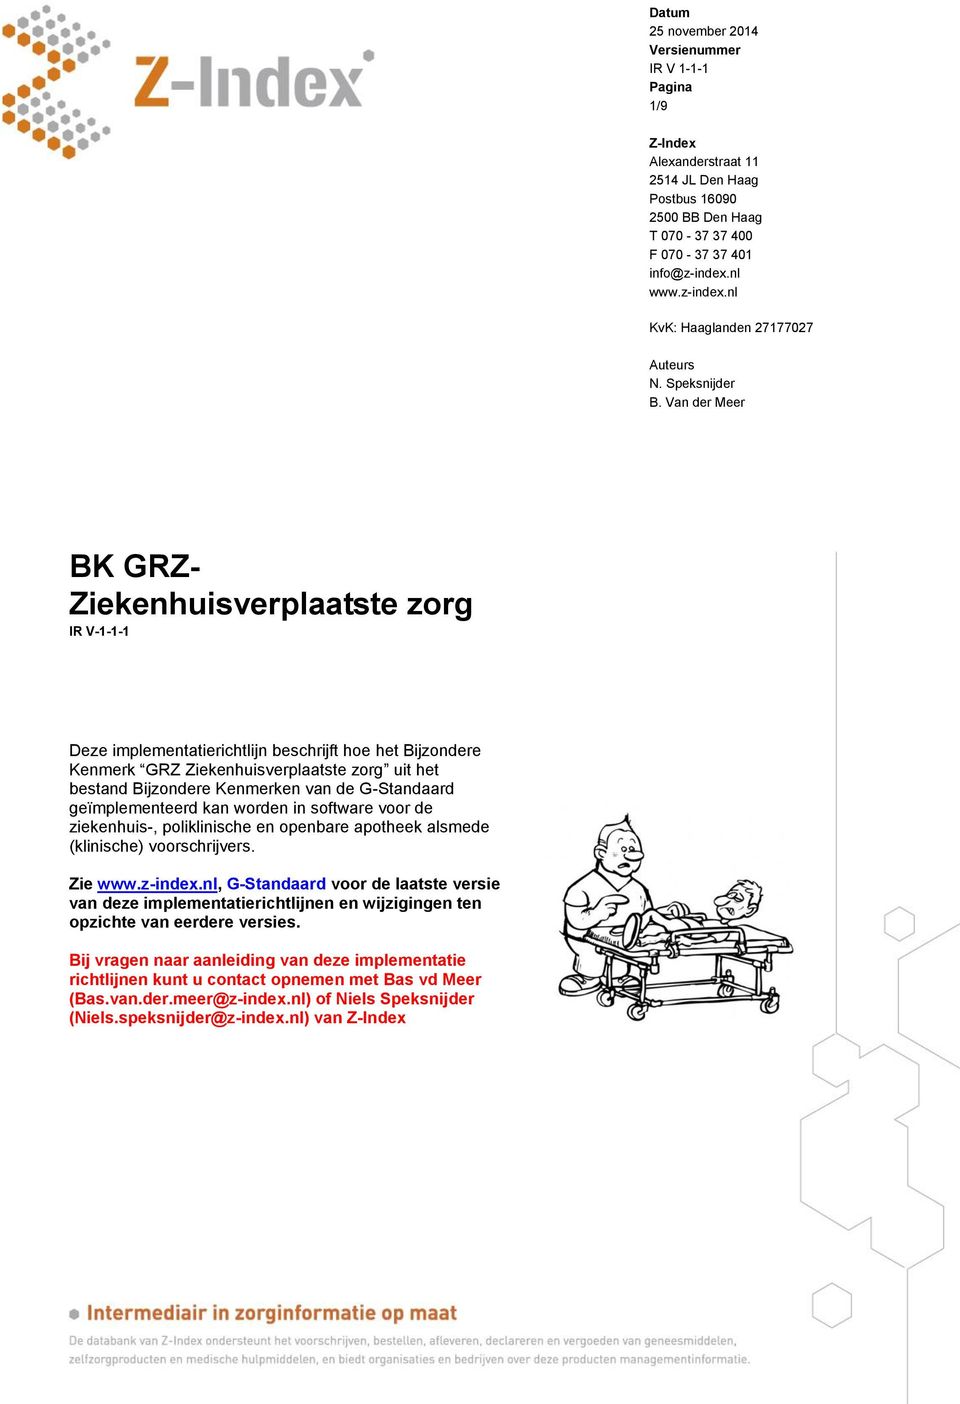 Van der Meer BK GRZ- Ziekenhuisverplaatste zorg IR V-1-1-1 Deze implementatierichtlijn beschrijft hoe het Bijzondere Kenmerk GRZ Ziekenhuisverplaatste zorg uit het bestand Bijzondere Kenmerken van de